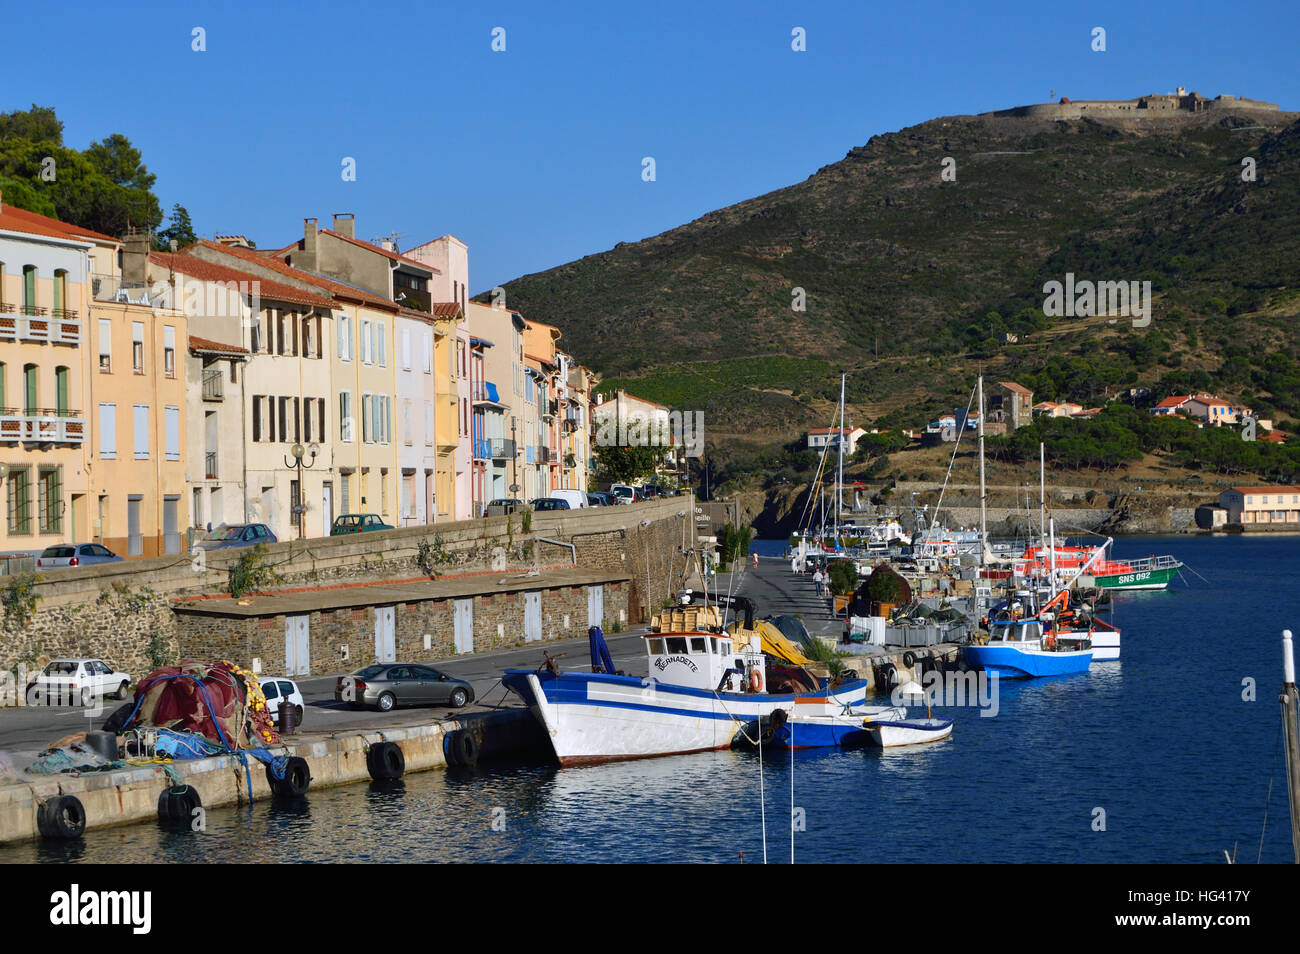 Bateaux dans le port de Port-Vendres, France Banque D'Images